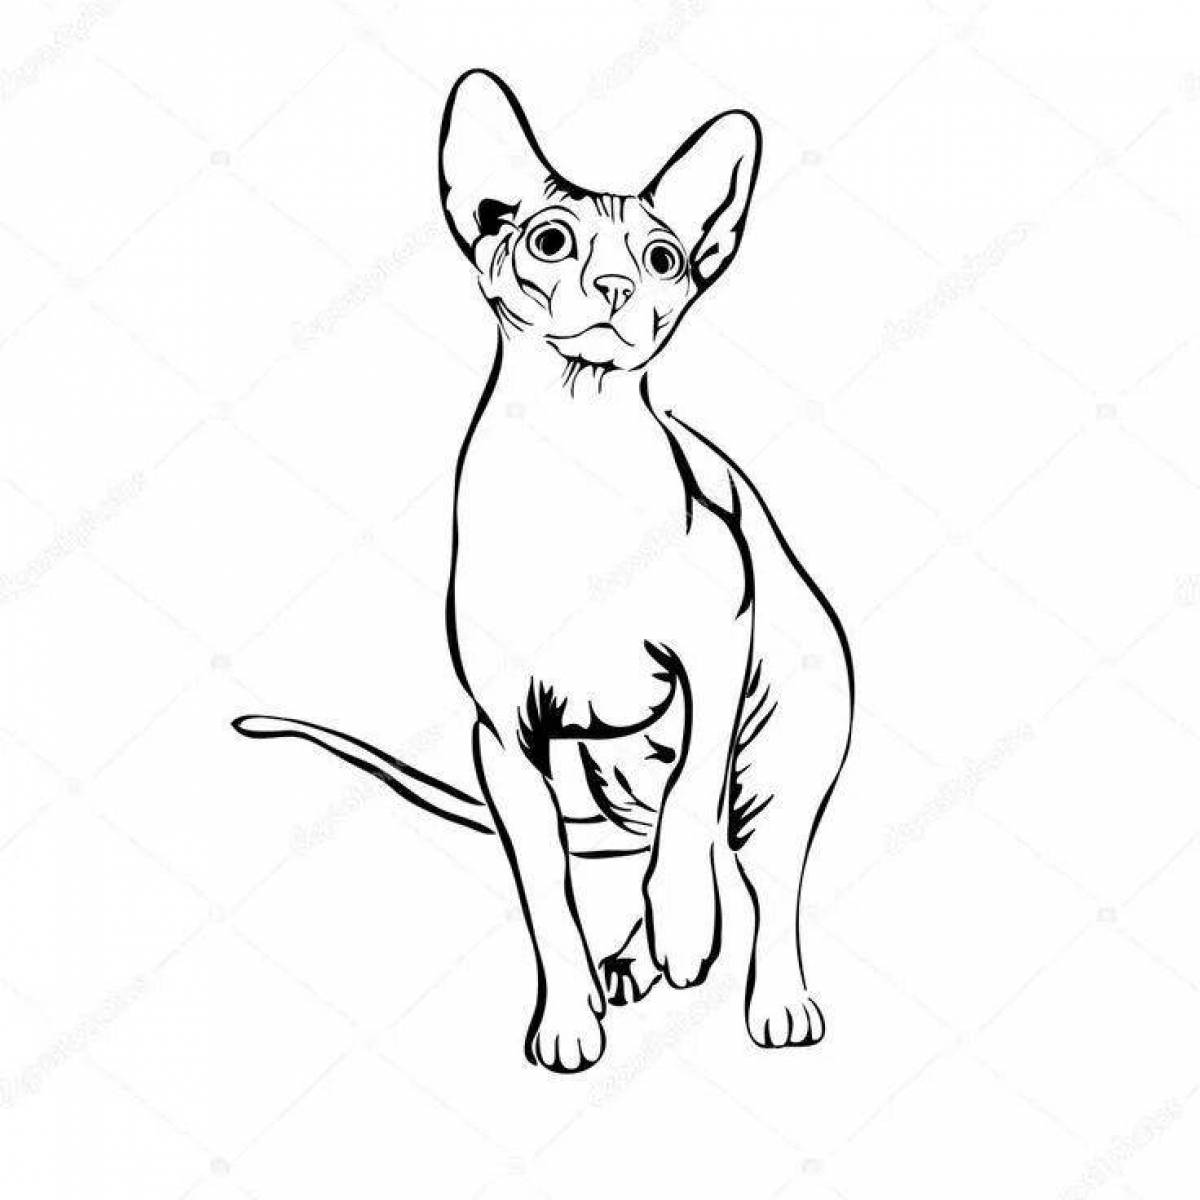 Забавная раскраска кота-сфинкса